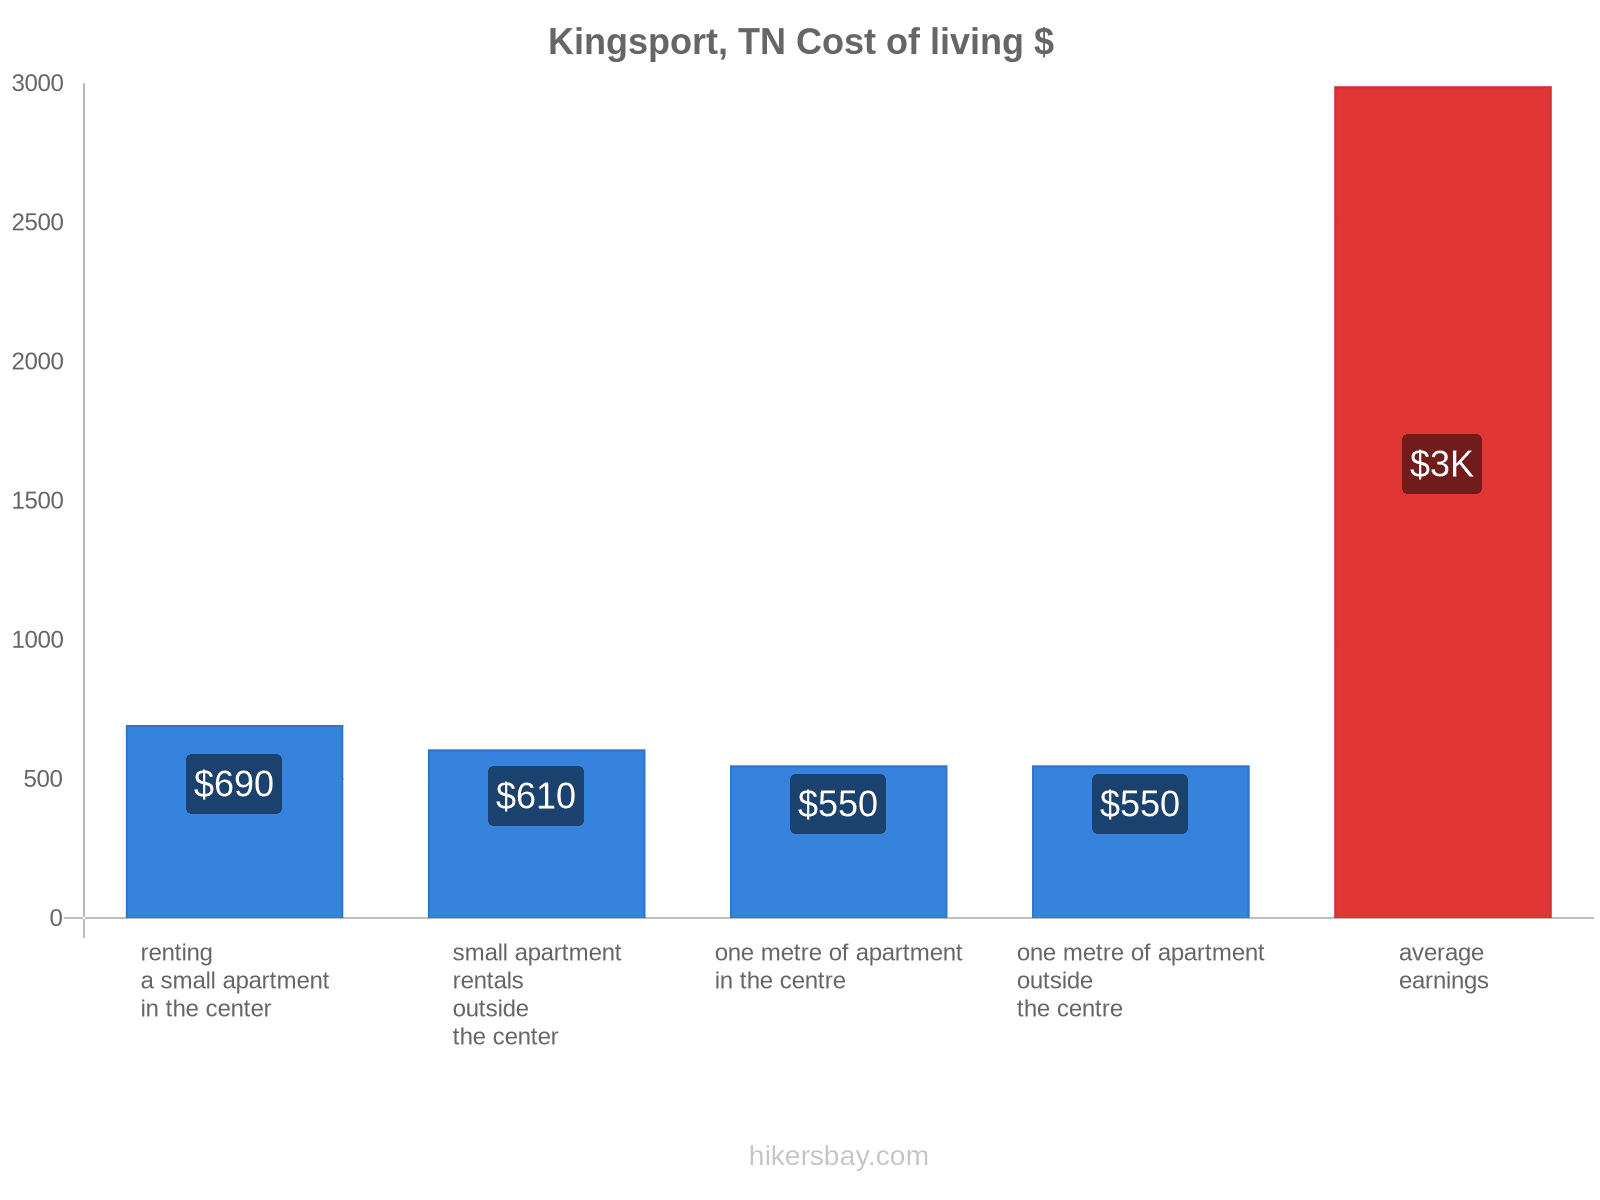 Kingsport, TN cost of living hikersbay.com